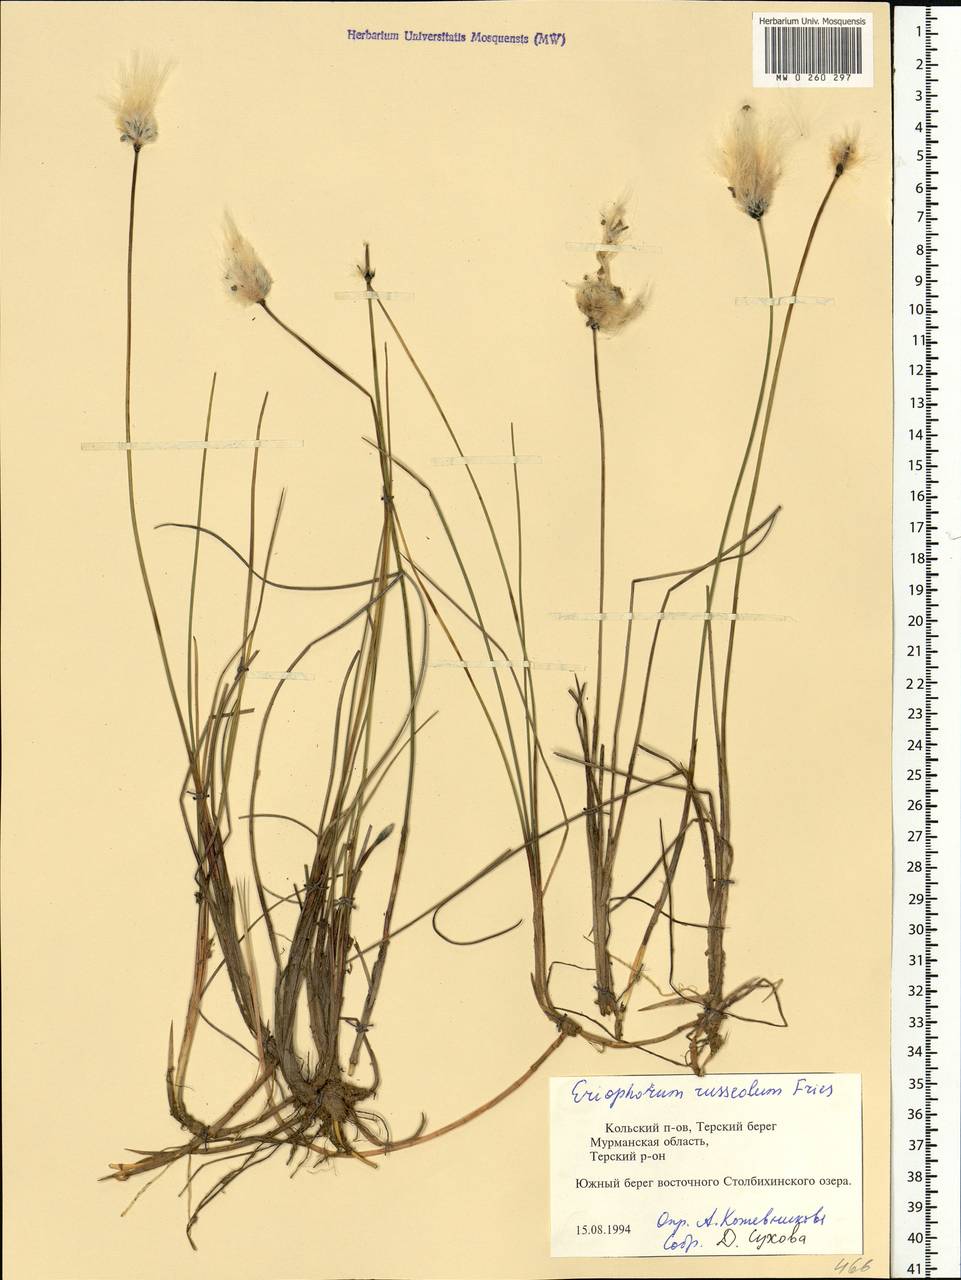 Eriophorum vaginatum L., Eastern Europe, Northern region (E1) (Russia)